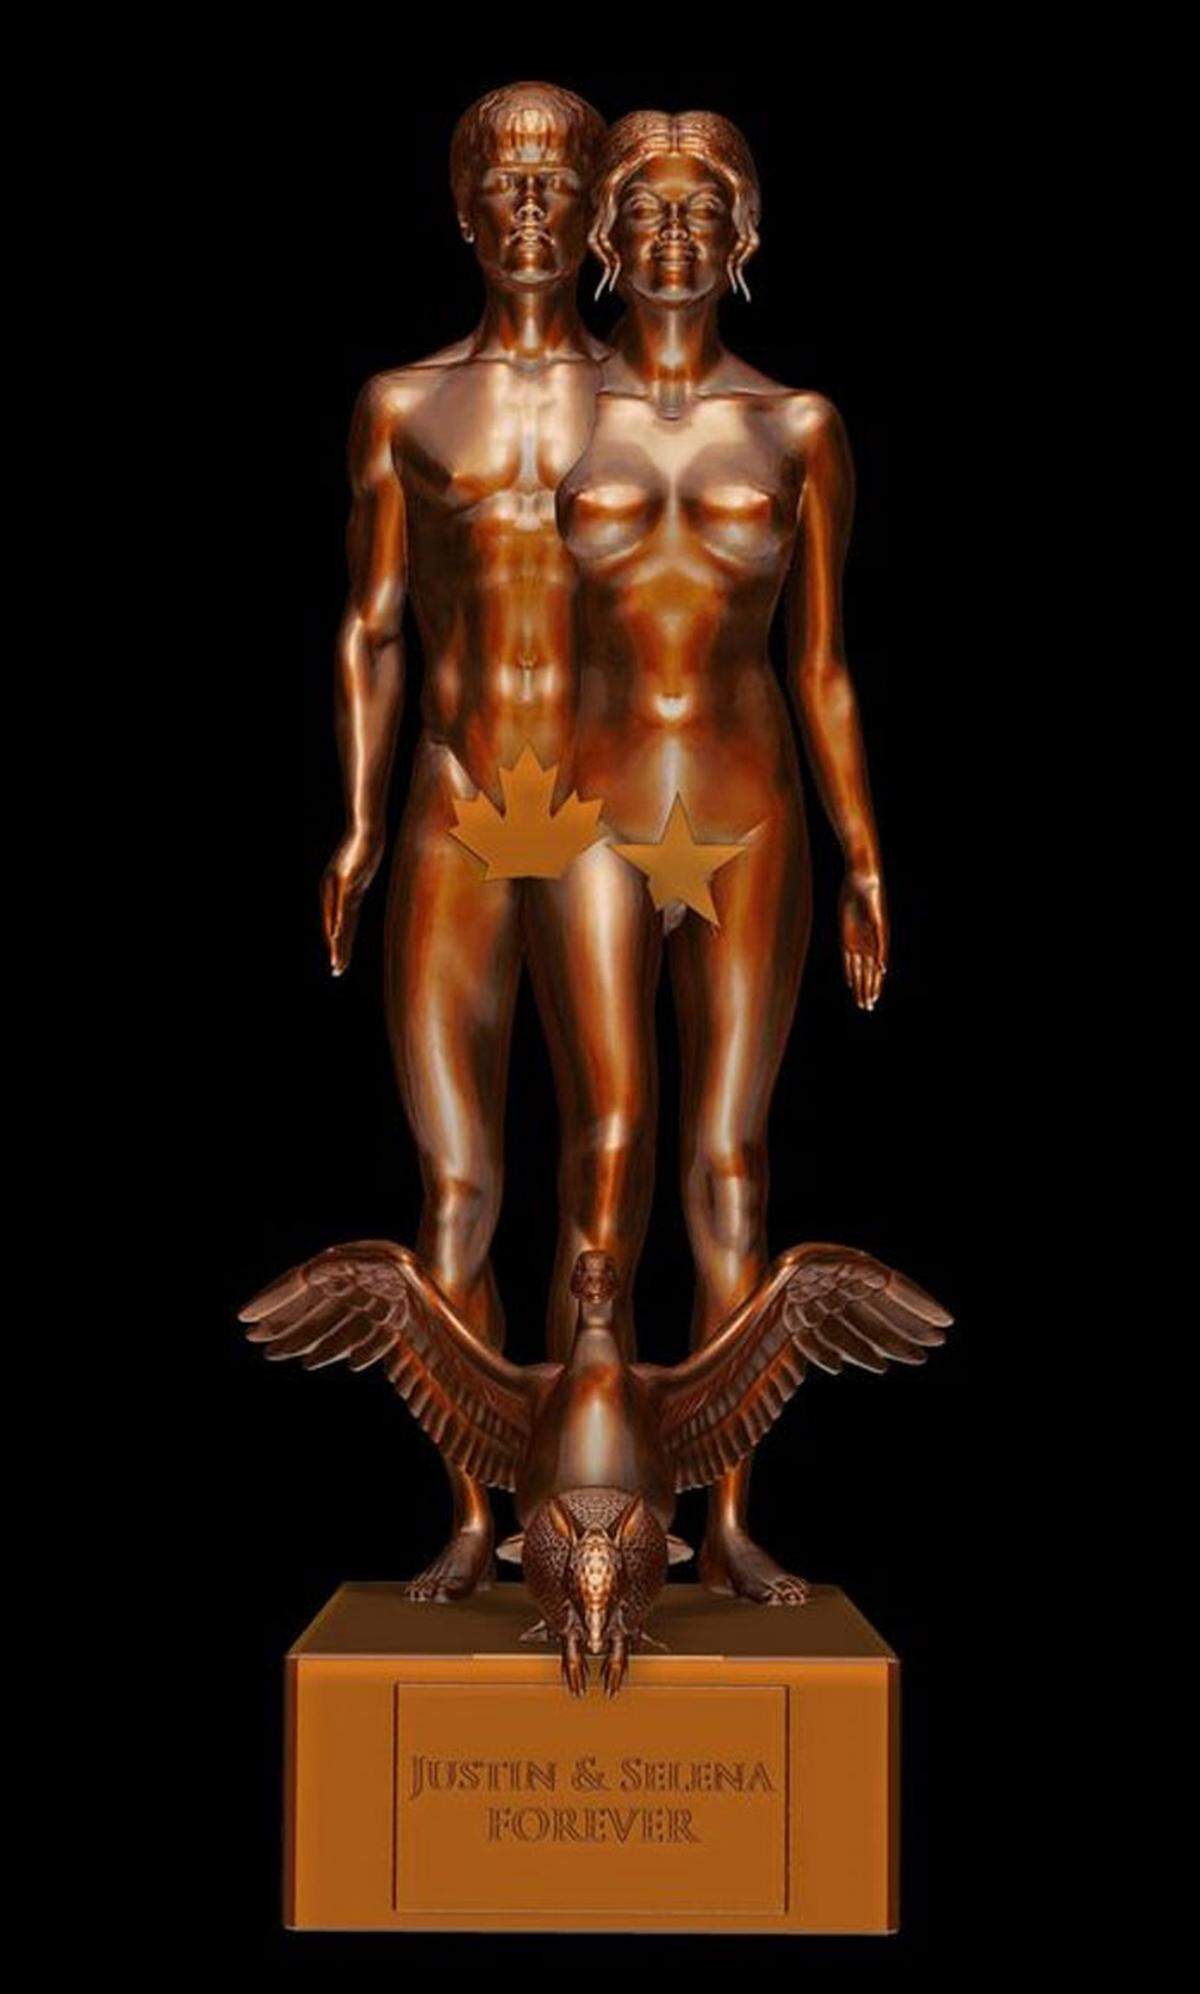 Der US-Bildhauer Daniel Edwards wählt als Vorlage für seine Skulpturen gerne medienstarke Prominente. Diese Woche enthüllte Edwards sein jüngstes Werk: Justin Bieber und Selena Gomez als ineinander verschmolzenes Adam-und-Eva-Paar in Bronze.